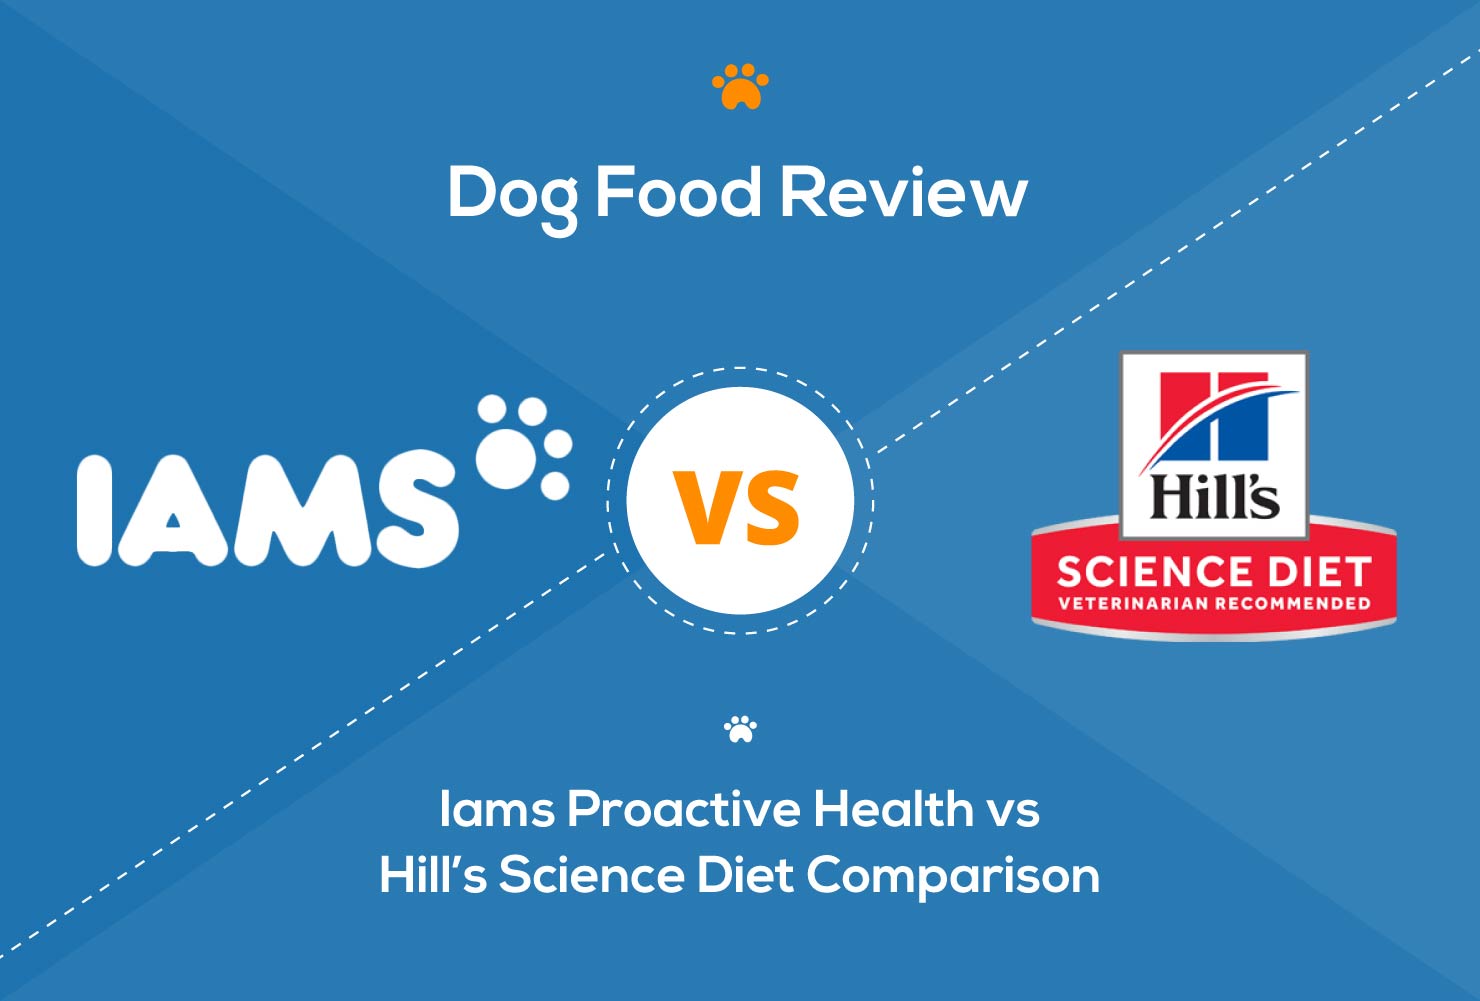 iams vs hills dog food review